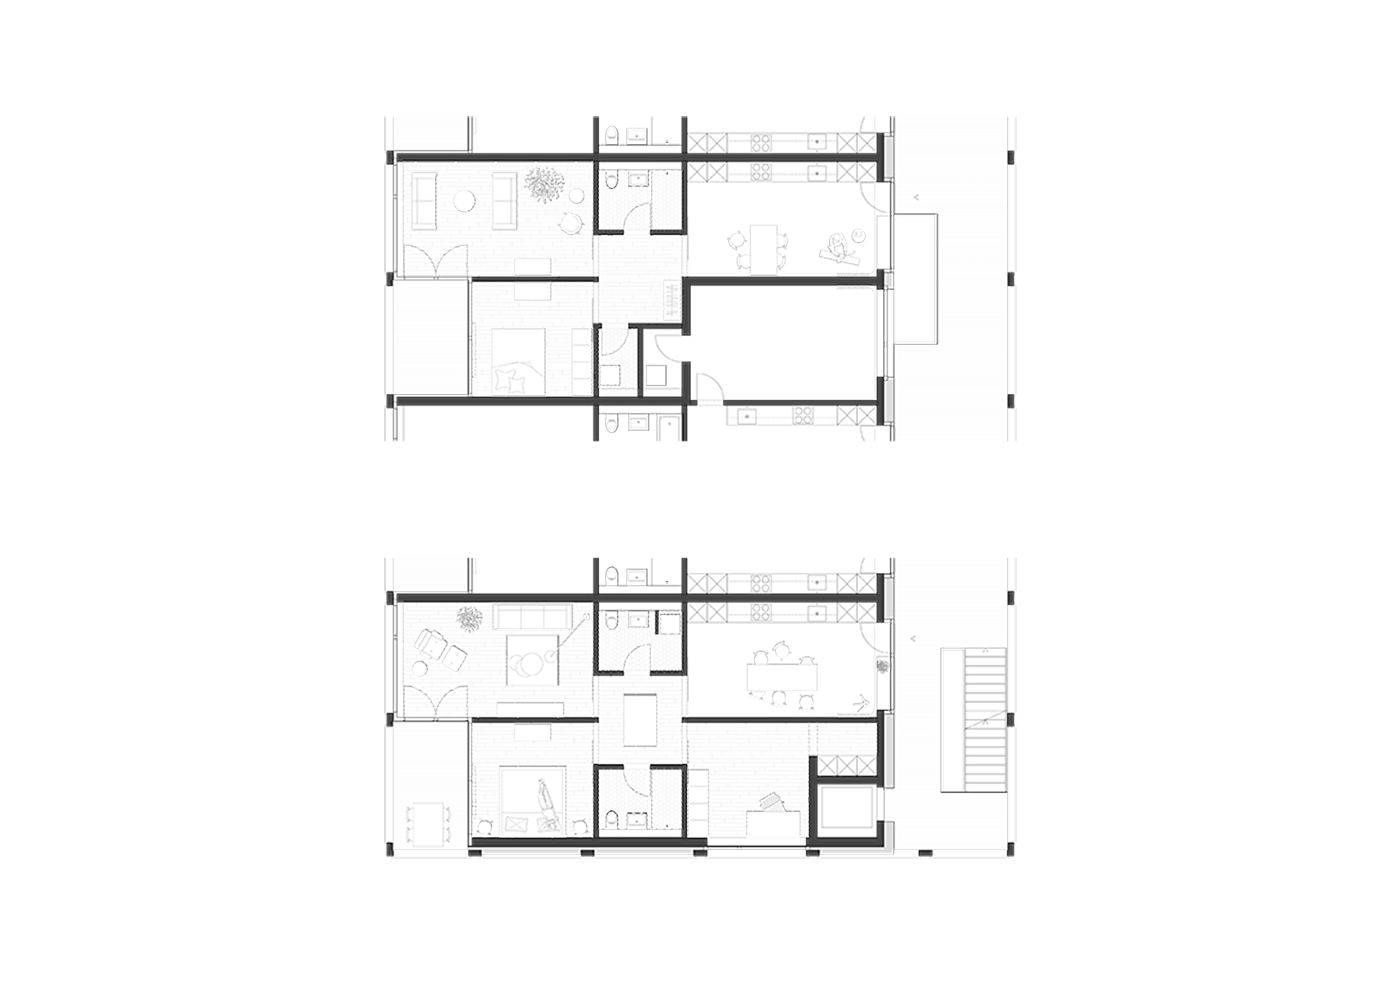 buan architekten – Projektwettbewerb Wilisauer Bote – Grundriss Wohnung Typ 2